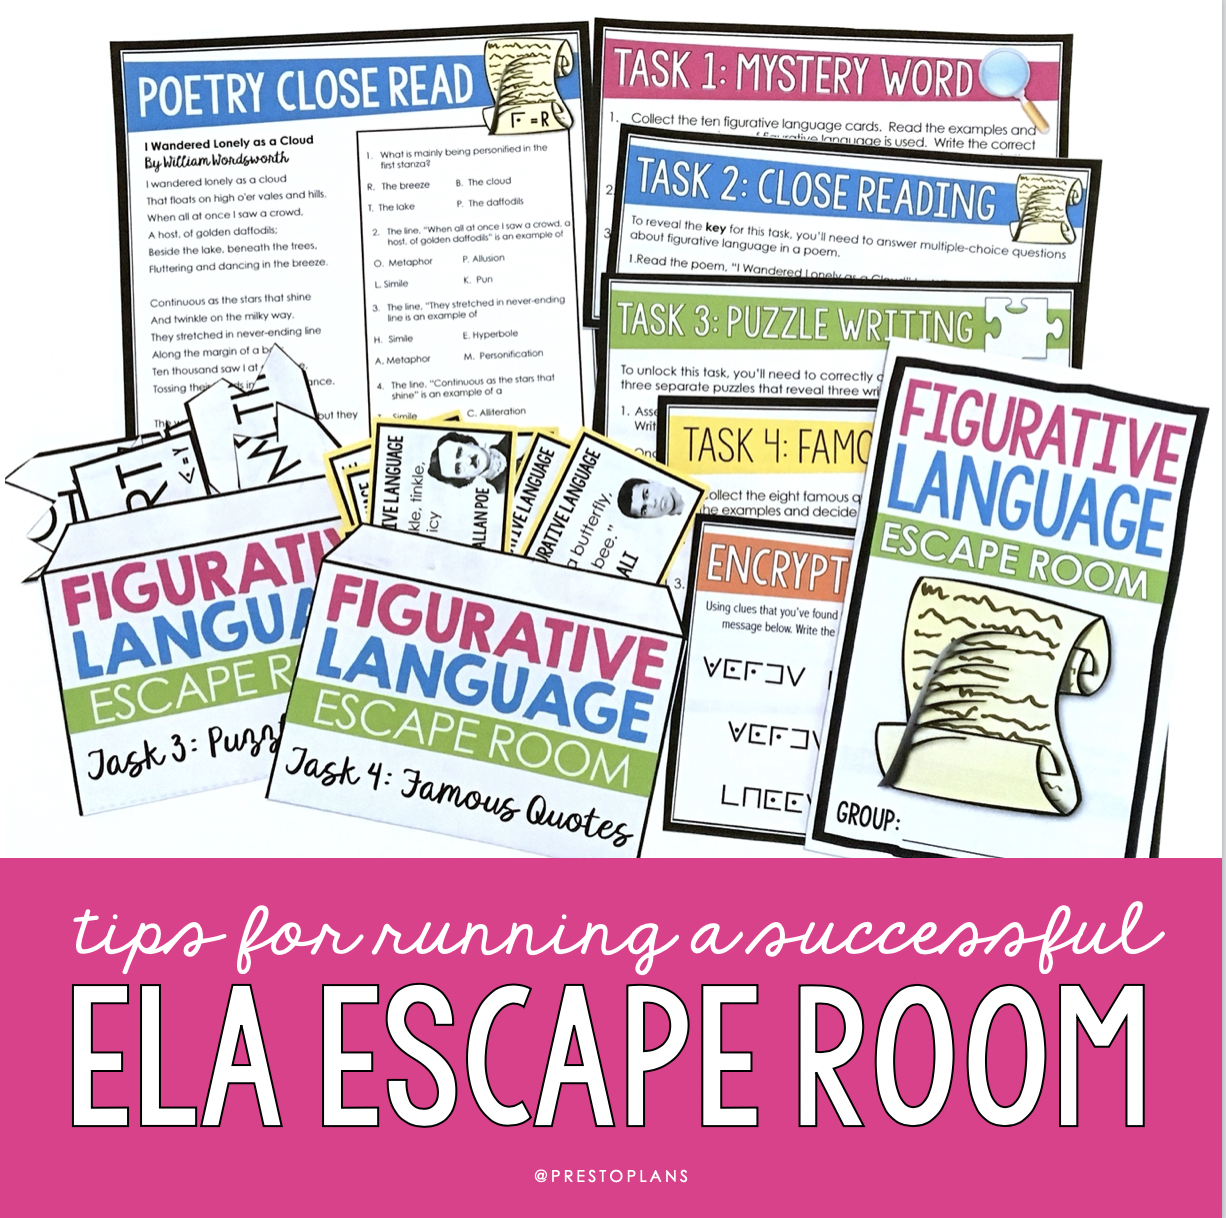 Escape Room Tips